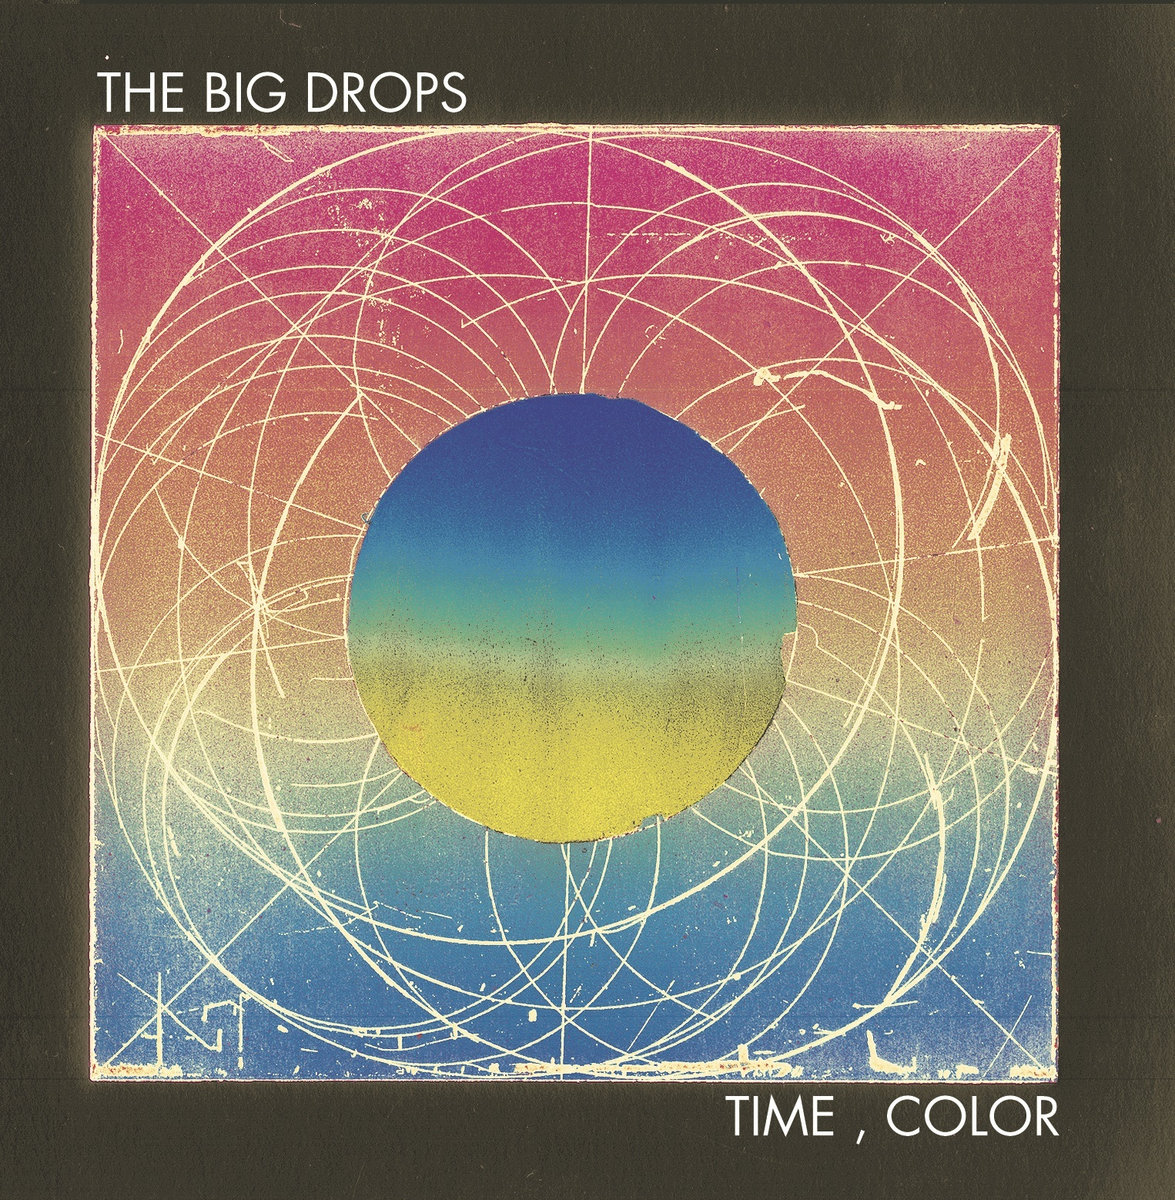 Time, Color - The Big Drops